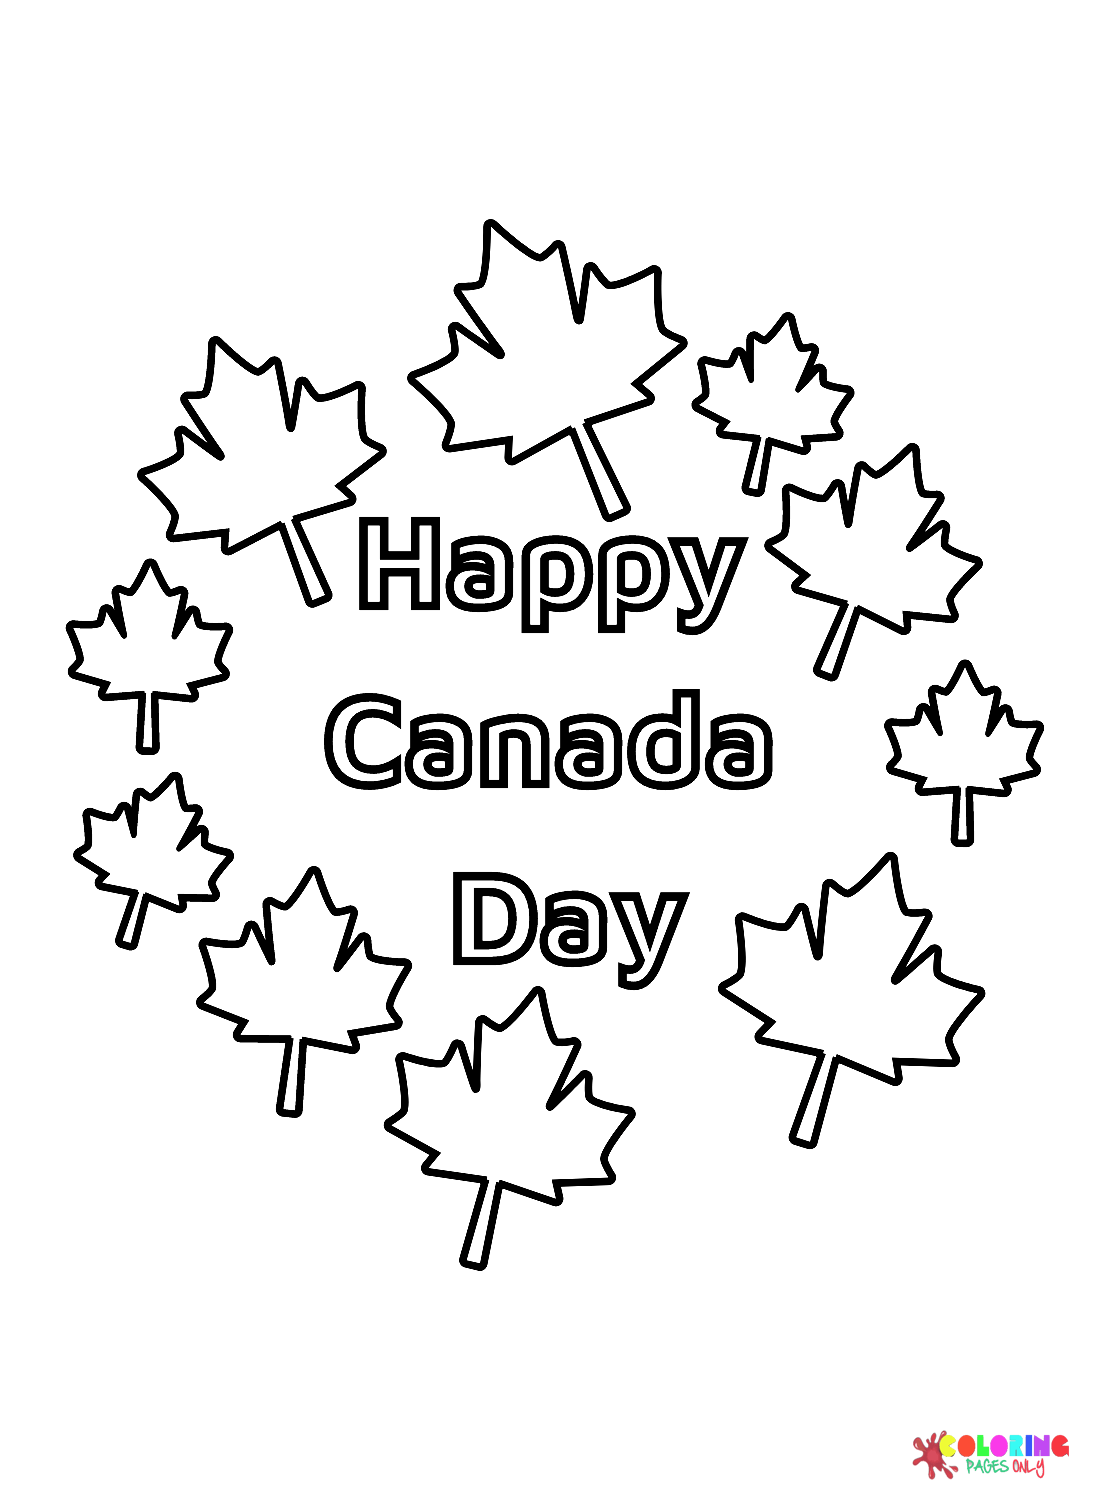 ورقة ملونة لعيد كندا السعيد من يوم كندا